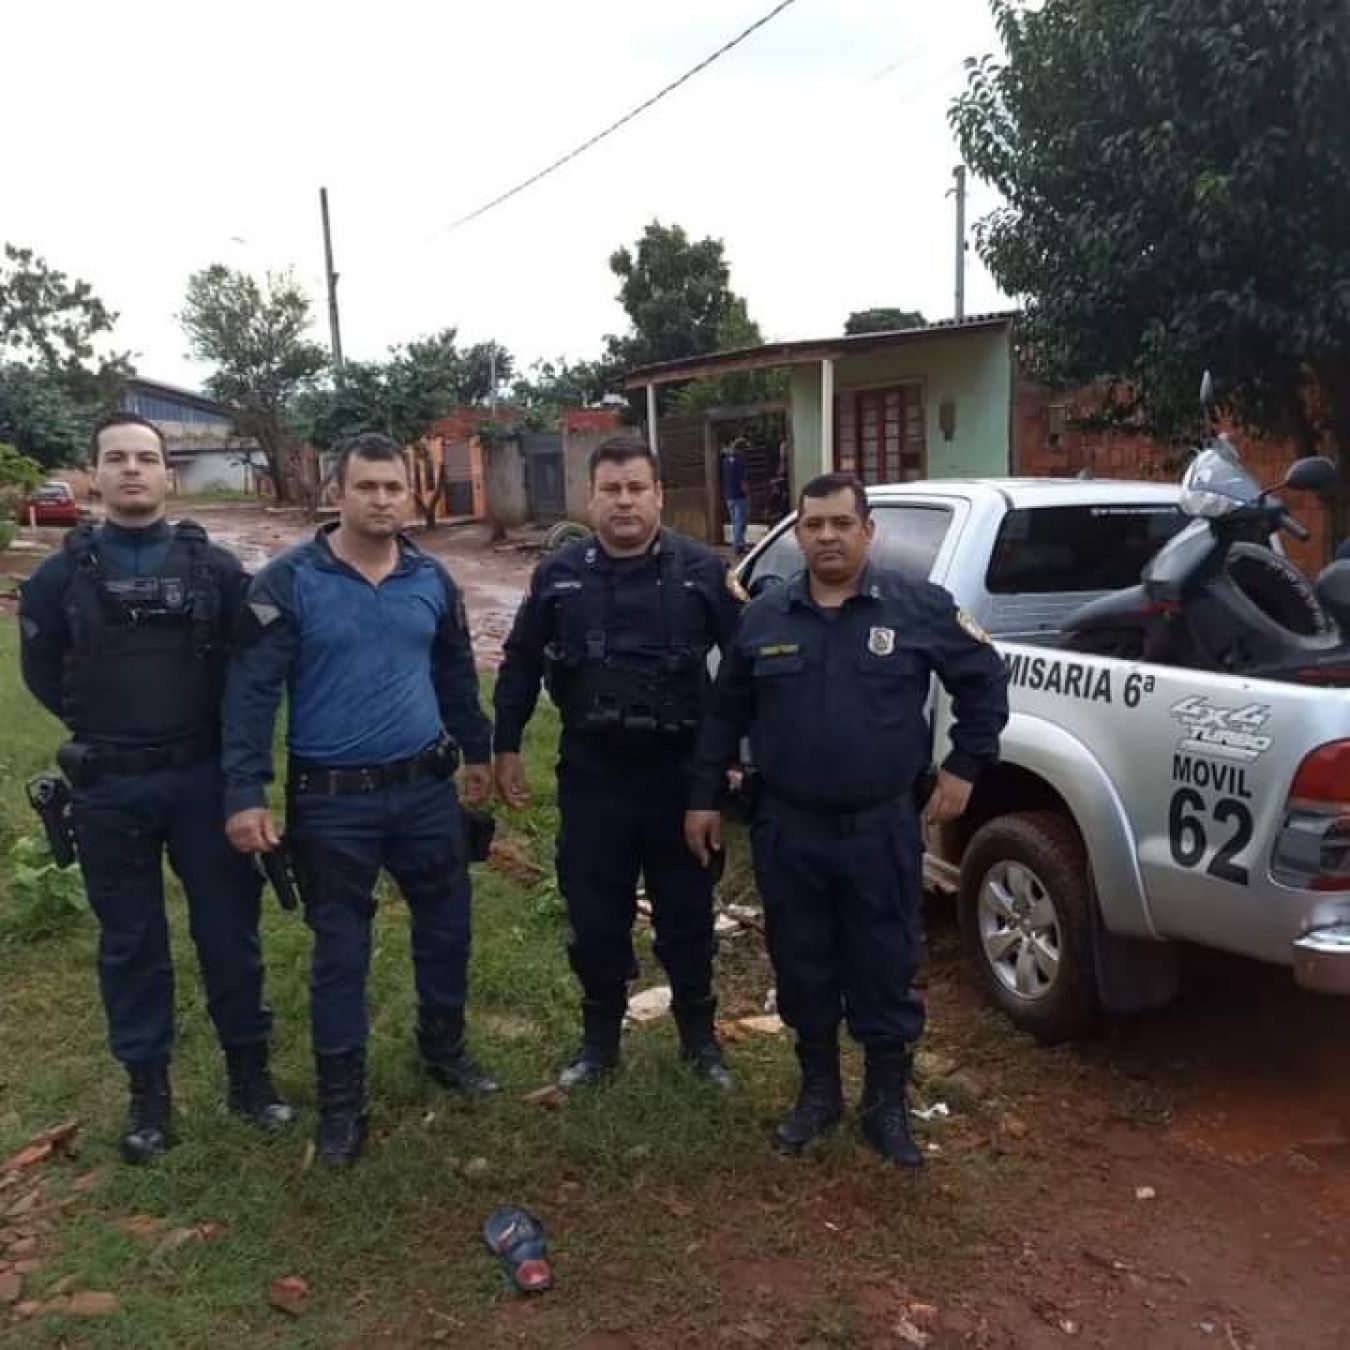 Policia Nacional y Policia Militar recuperan en el lado brasileño motocicleta robada en General Genes